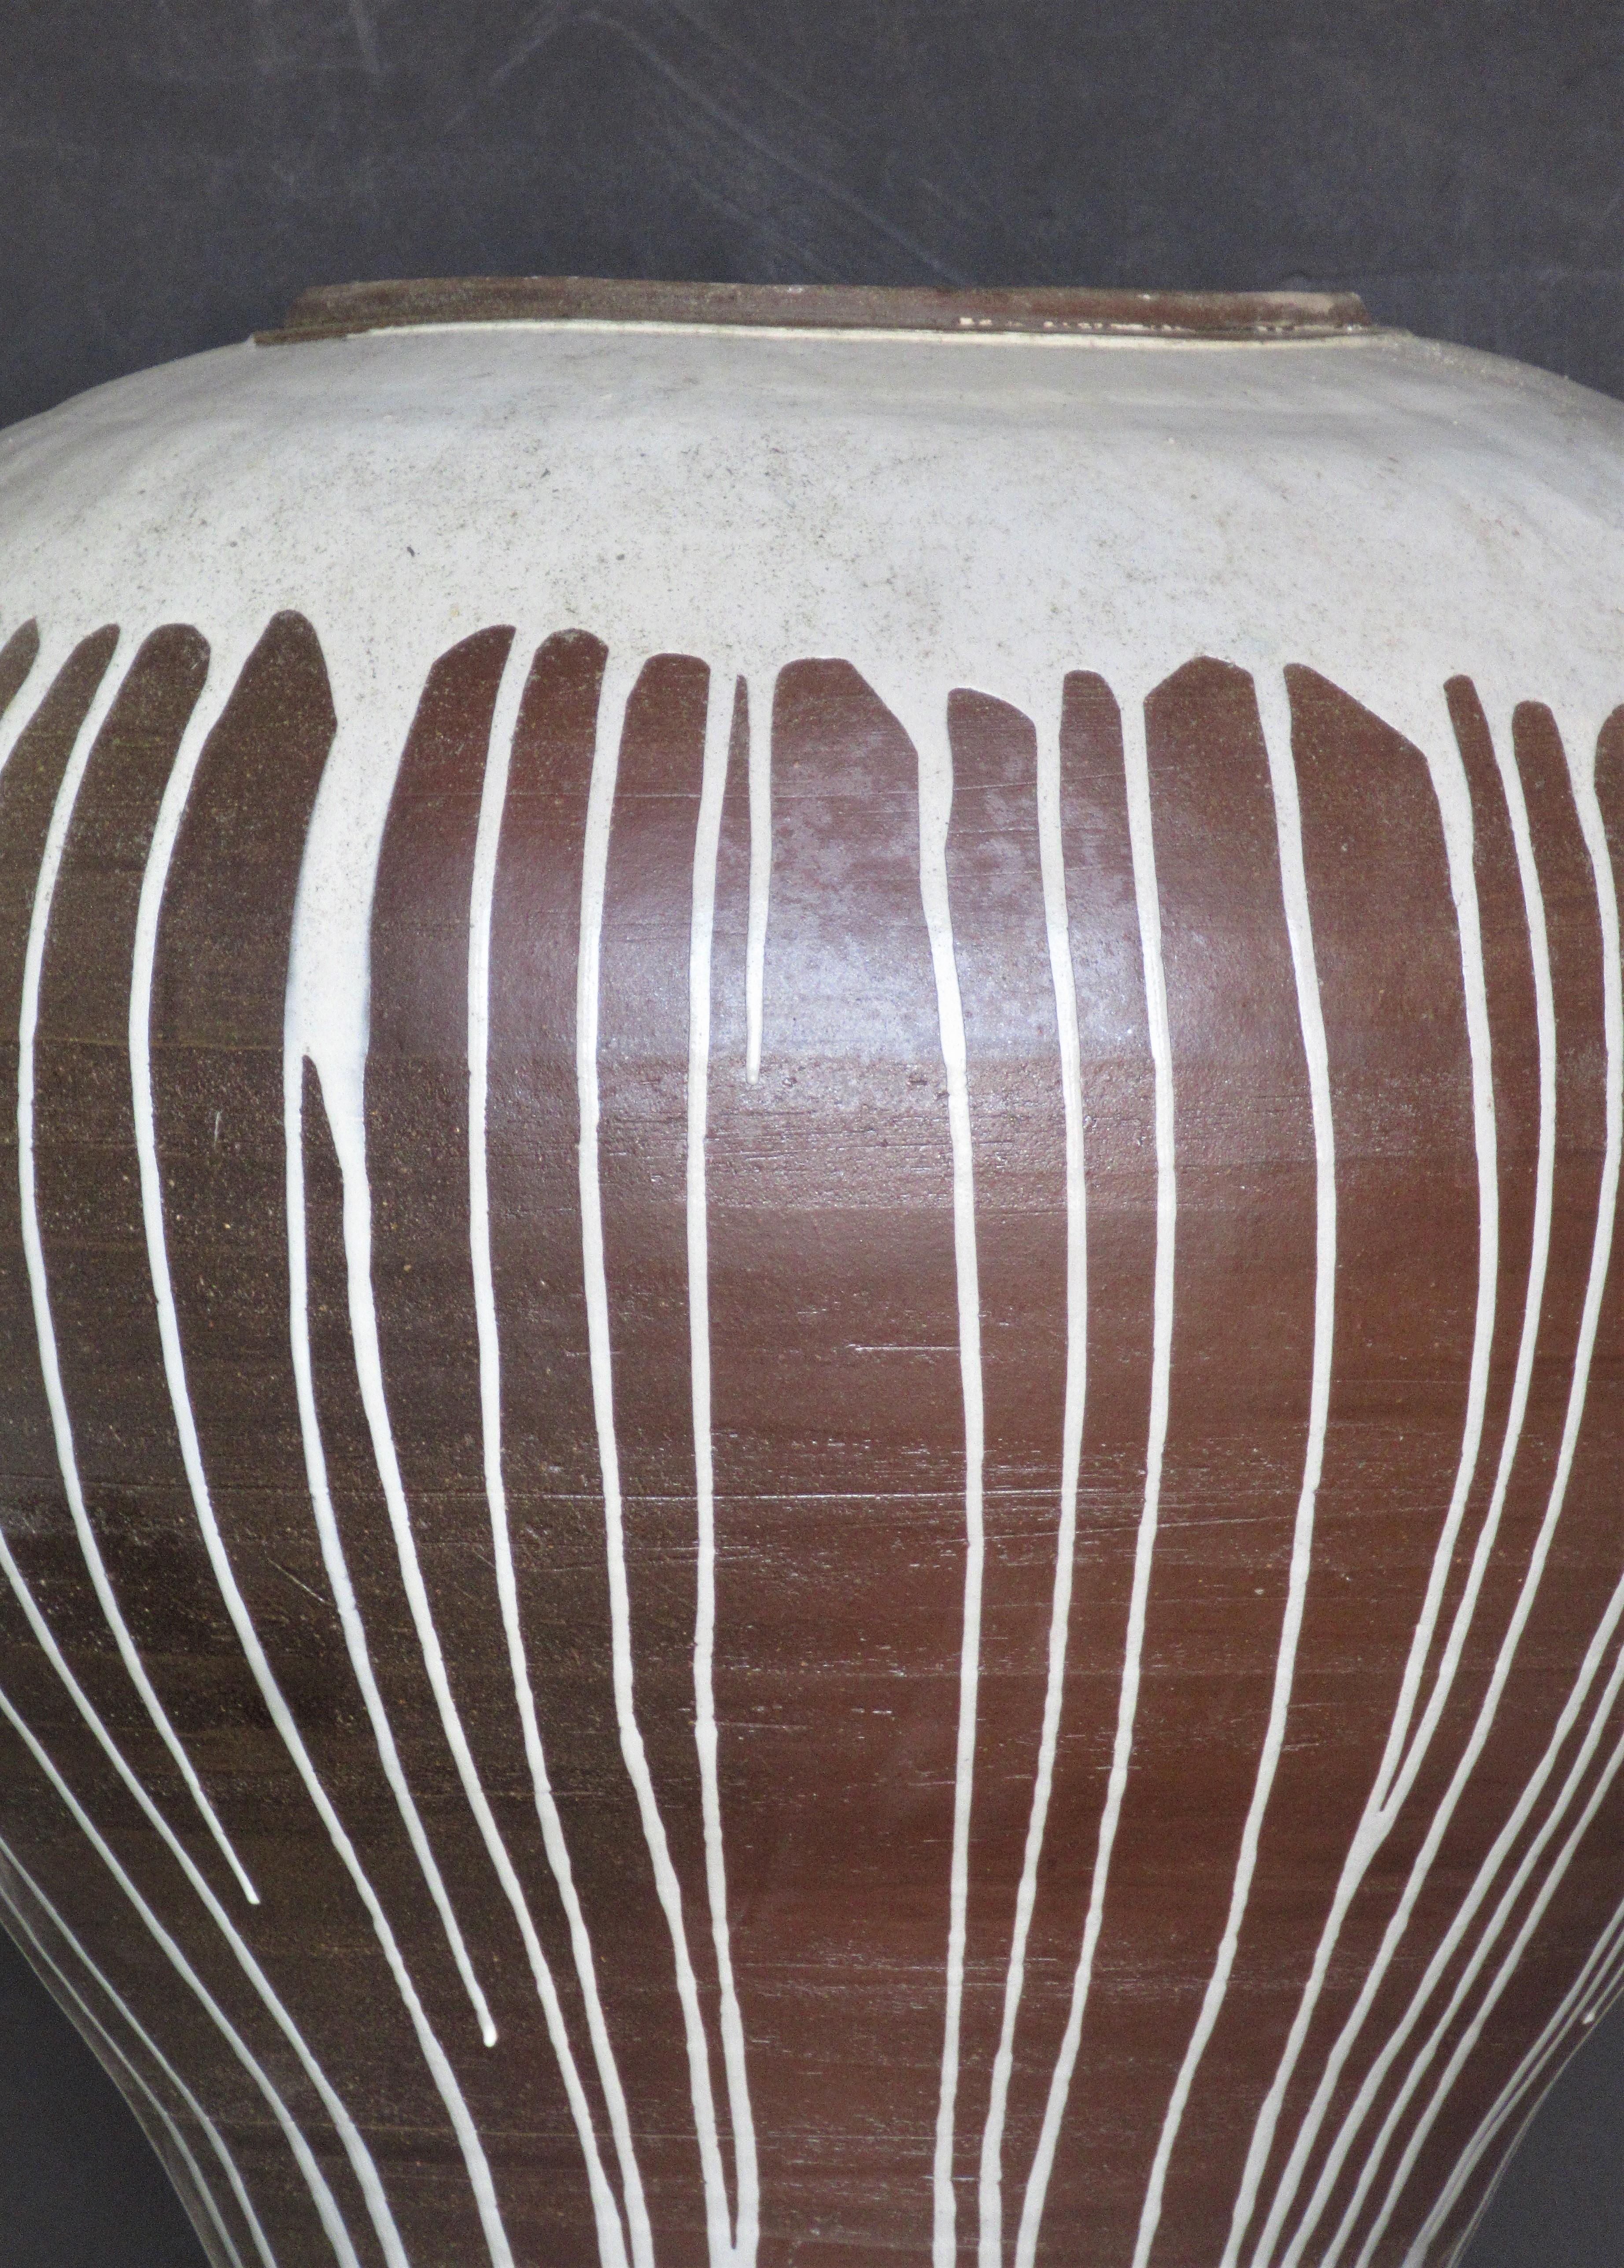 Contemporary American Studio Ceramics Massive Ovoid Vase